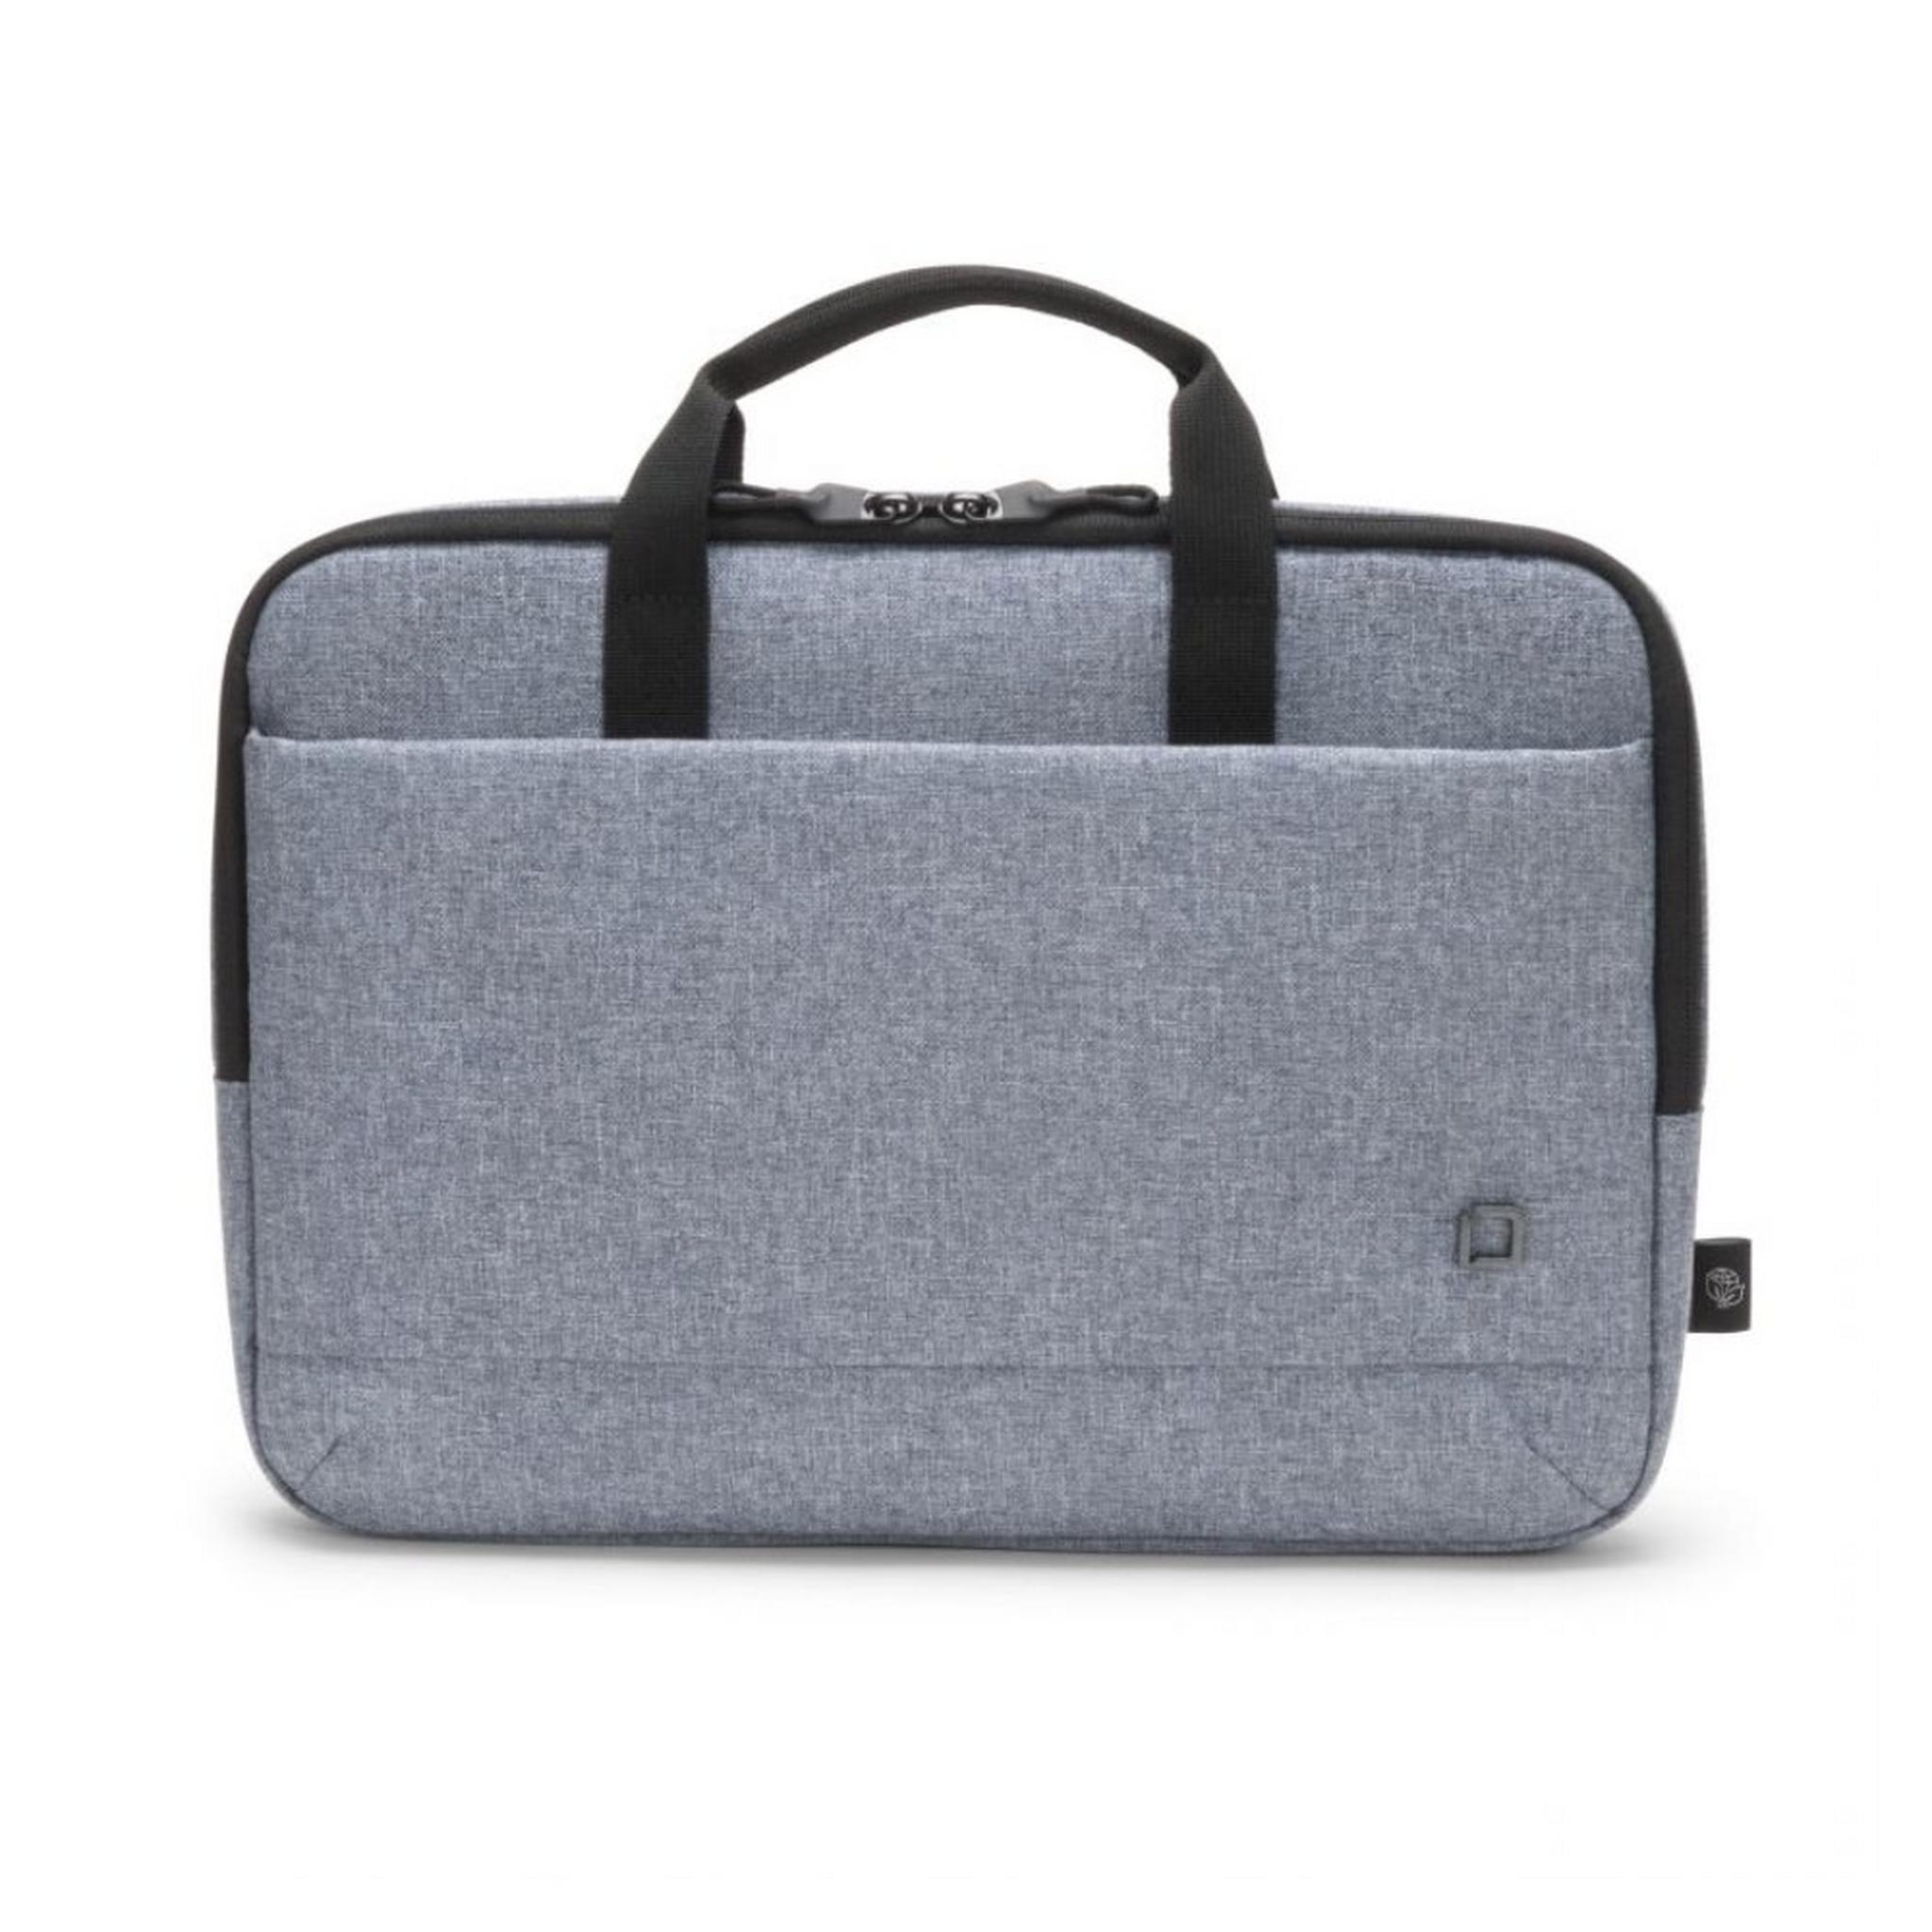 حقيبة ايكو سليم موشن للابتوب بحجم 13.3 بوصة من ديكوتا - أزرق